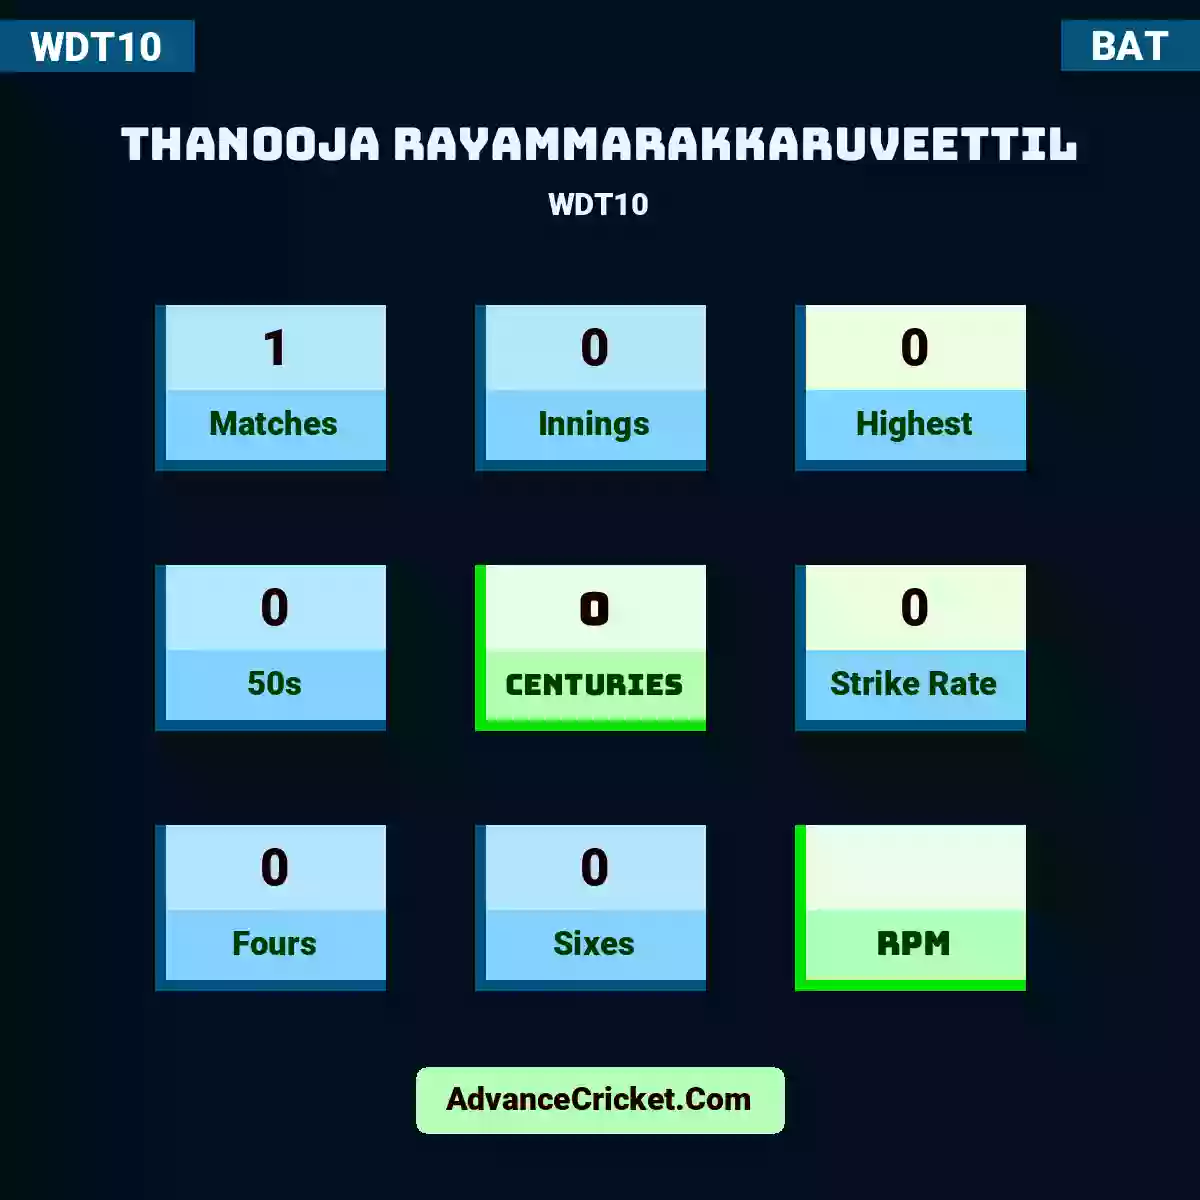 Thanooja Rayammarakkaruveettil WDT10 , Thanooja Rayammarakkaruveettil played 1 matches, scored 0 runs as highest, 0 half-centuries, and 0 centuries, with a strike rate of 0. T.Rayammarakkaruveettil hit 0 fours and 0 sixes.